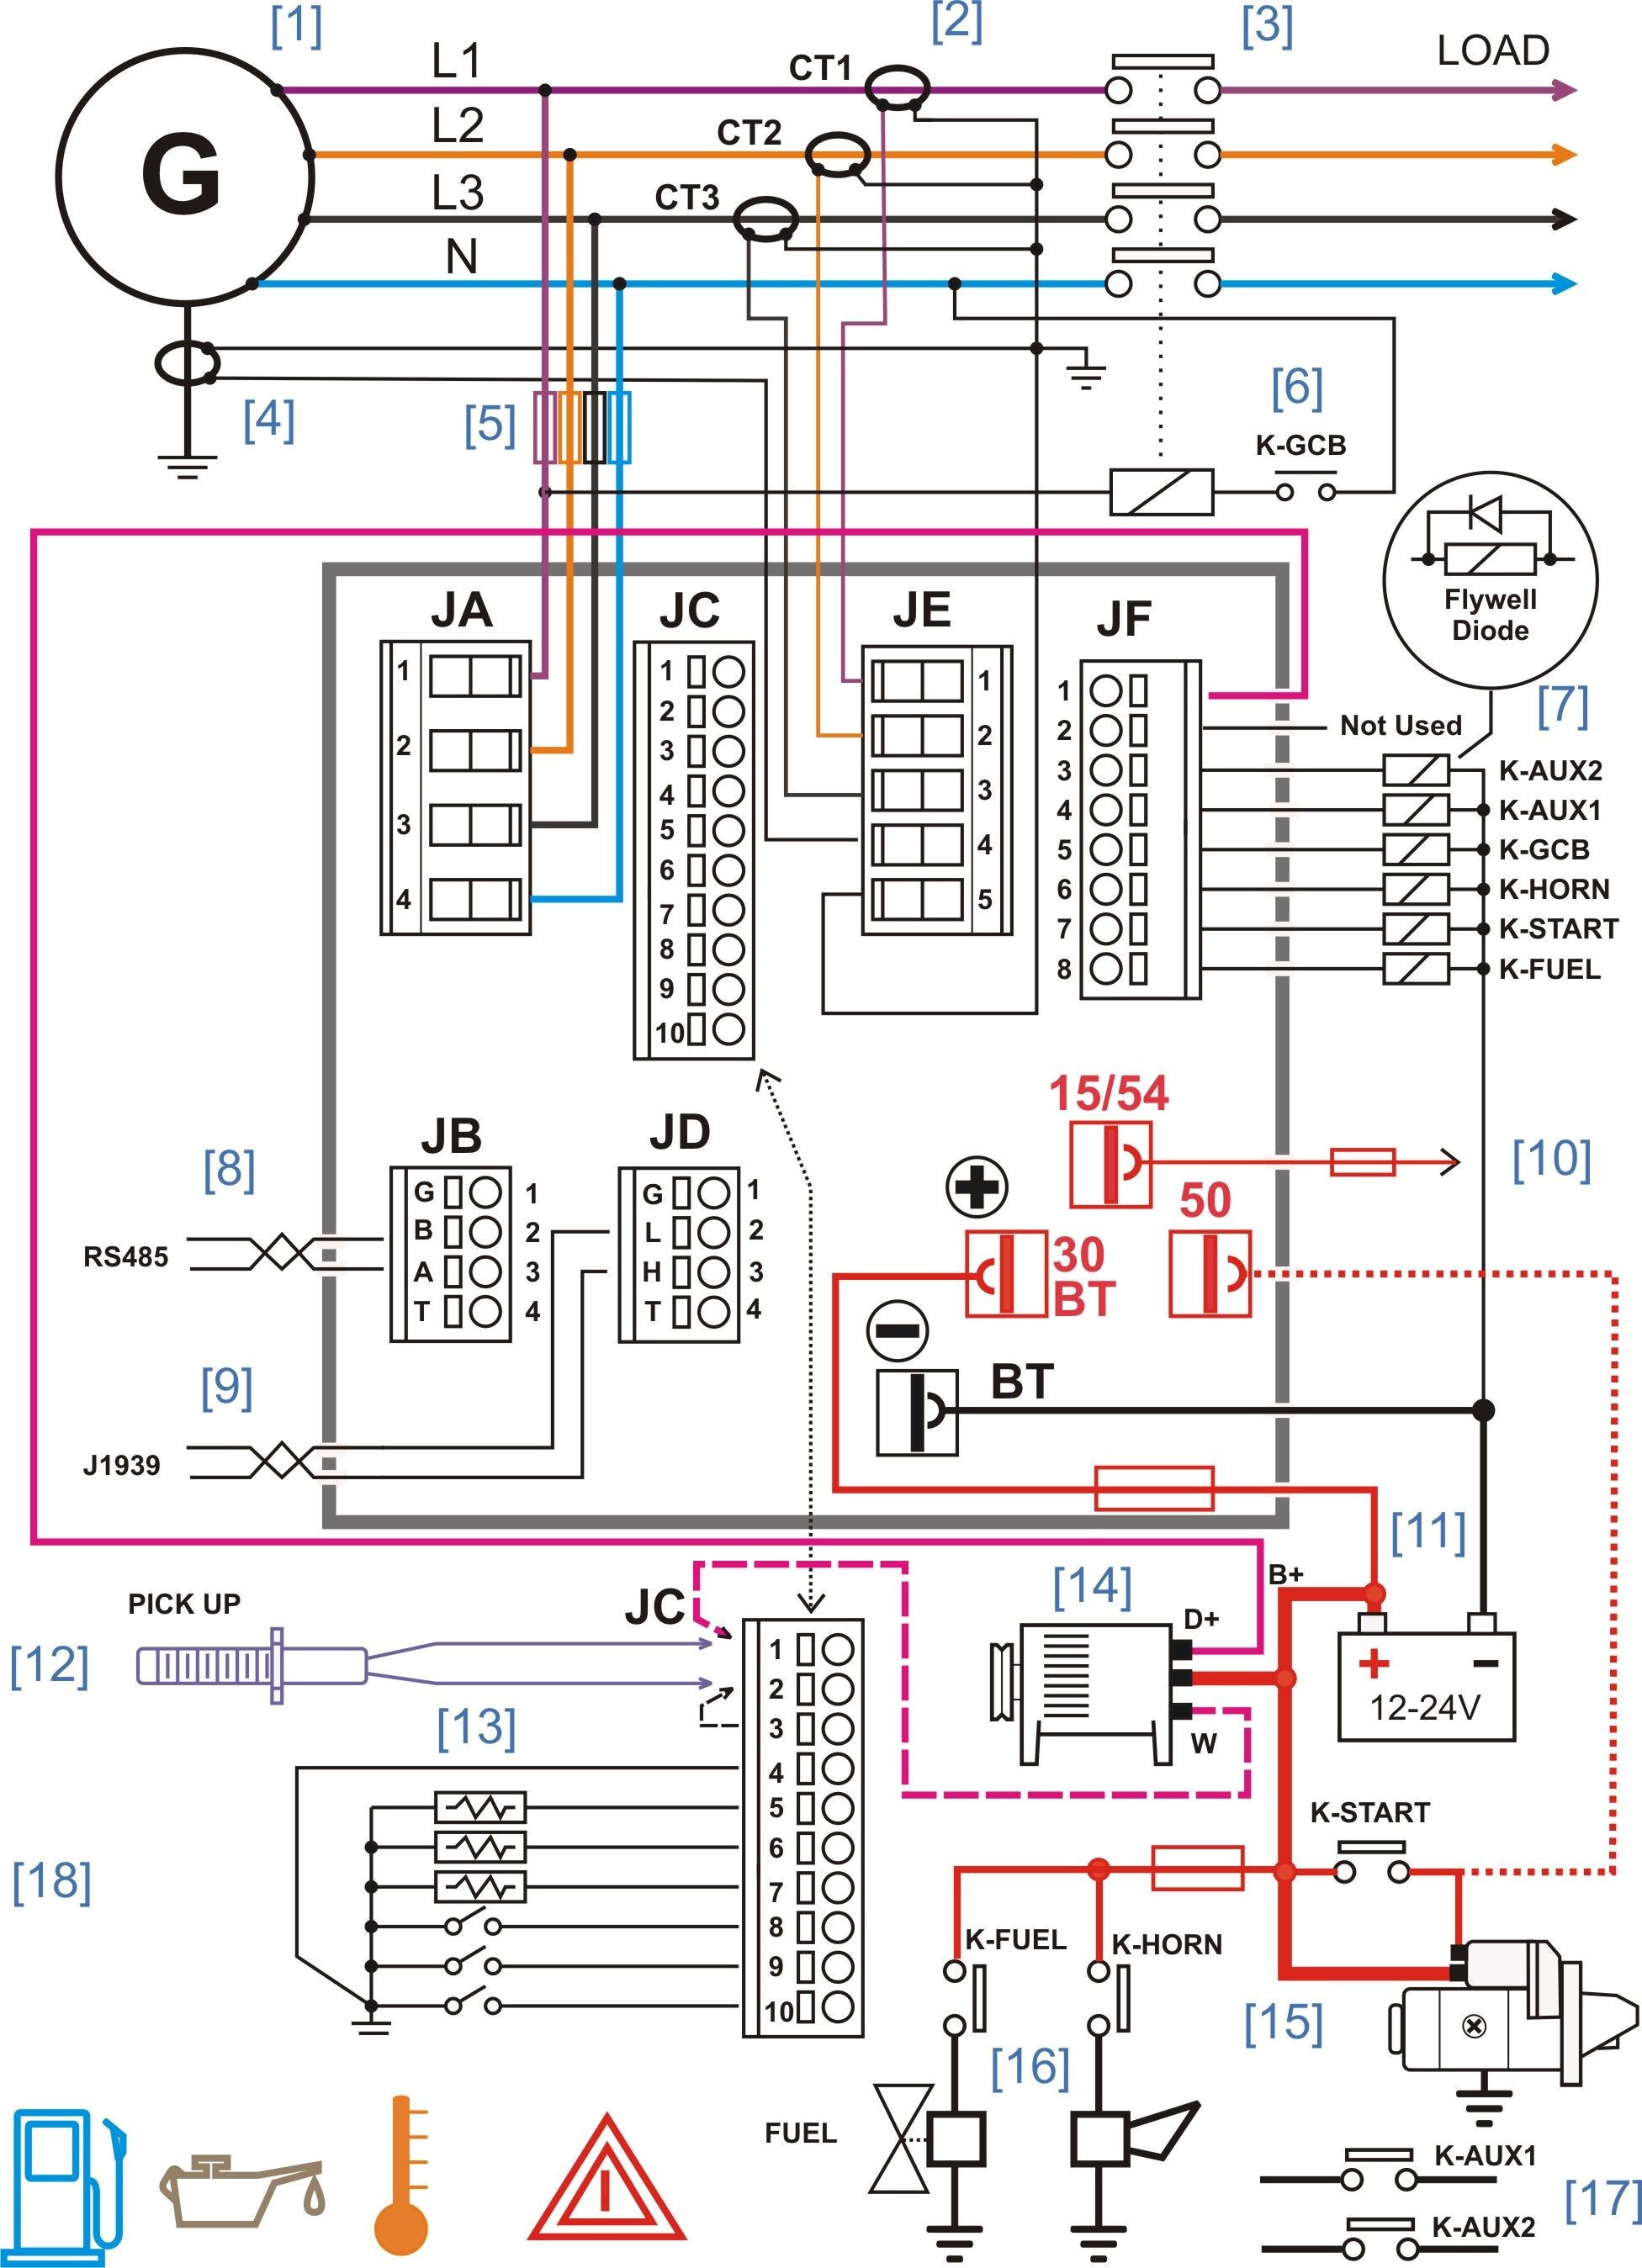 Wiring Diagram Backup Generator Fresh Diesel Generator Control Panel Wiring Diagram